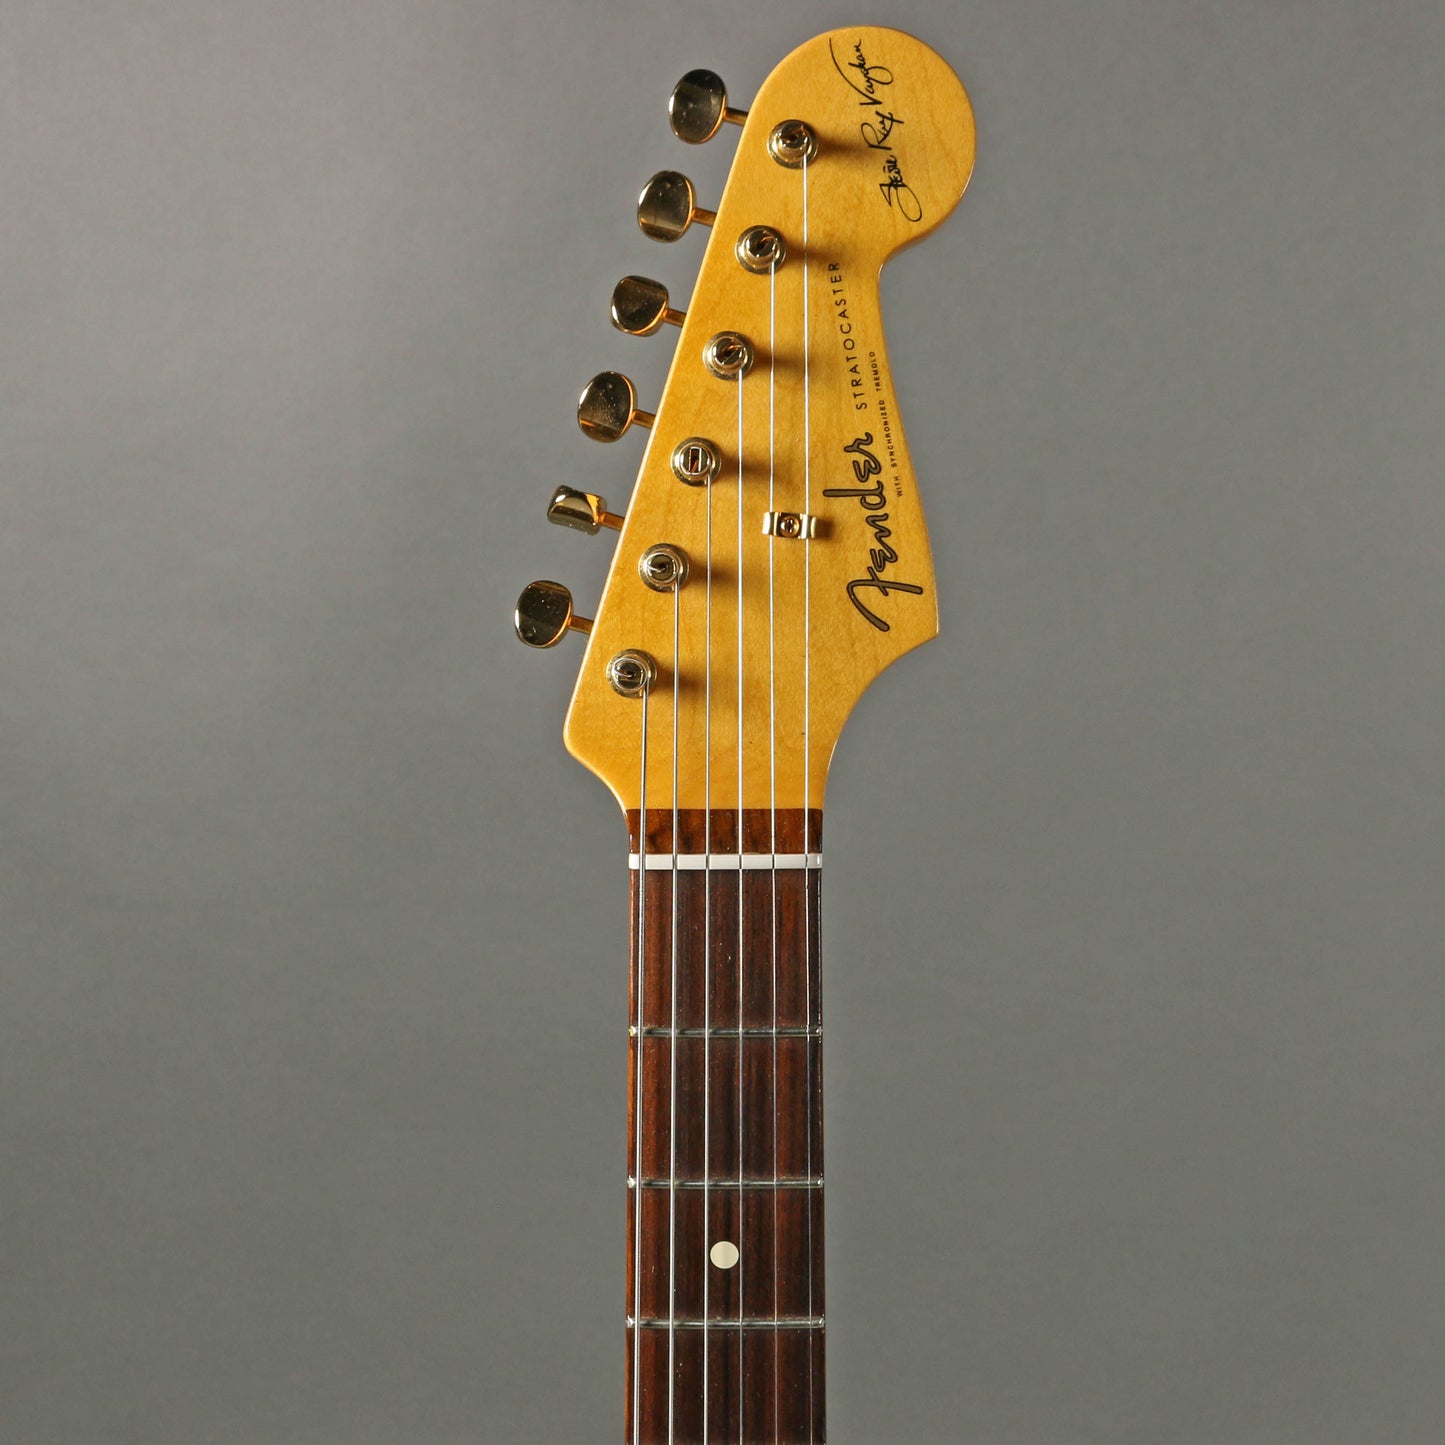 2017 Fender Stevie Ray Vaughn Stratocaster [*カスタム レリック]